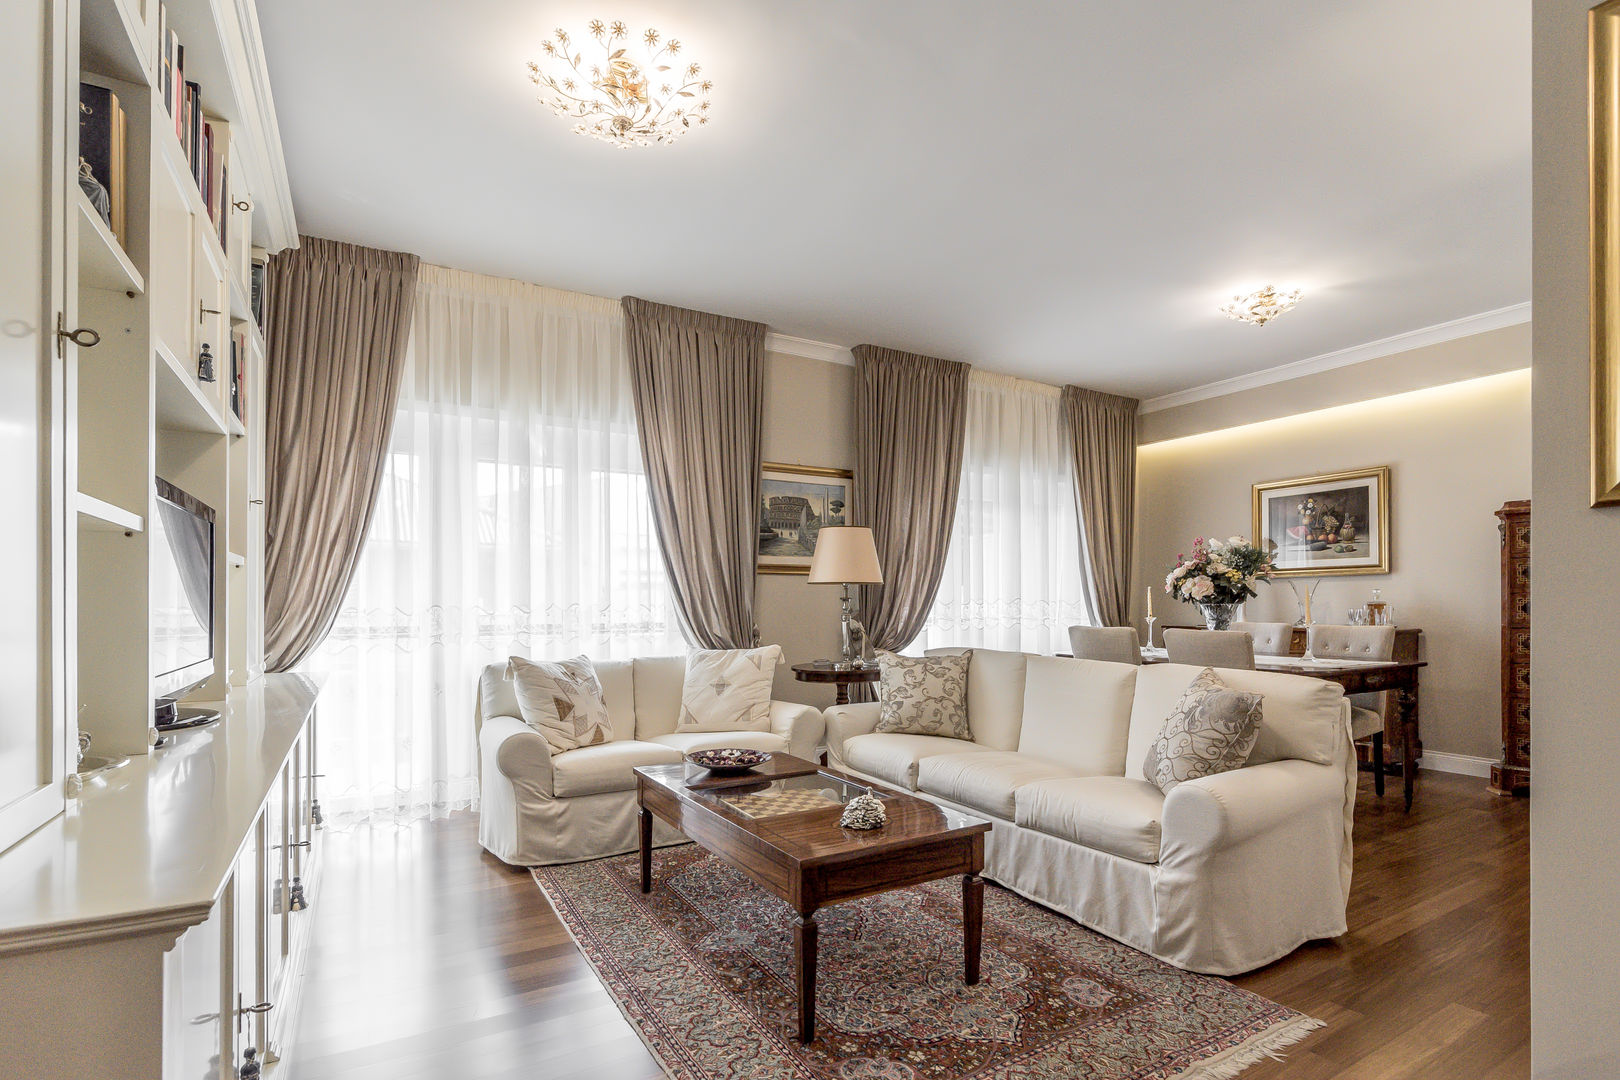 Ristrutturazione appartamento Roma: Nuova disposizione degli spazi, Facile Ristrutturare Facile Ristrutturare Living room